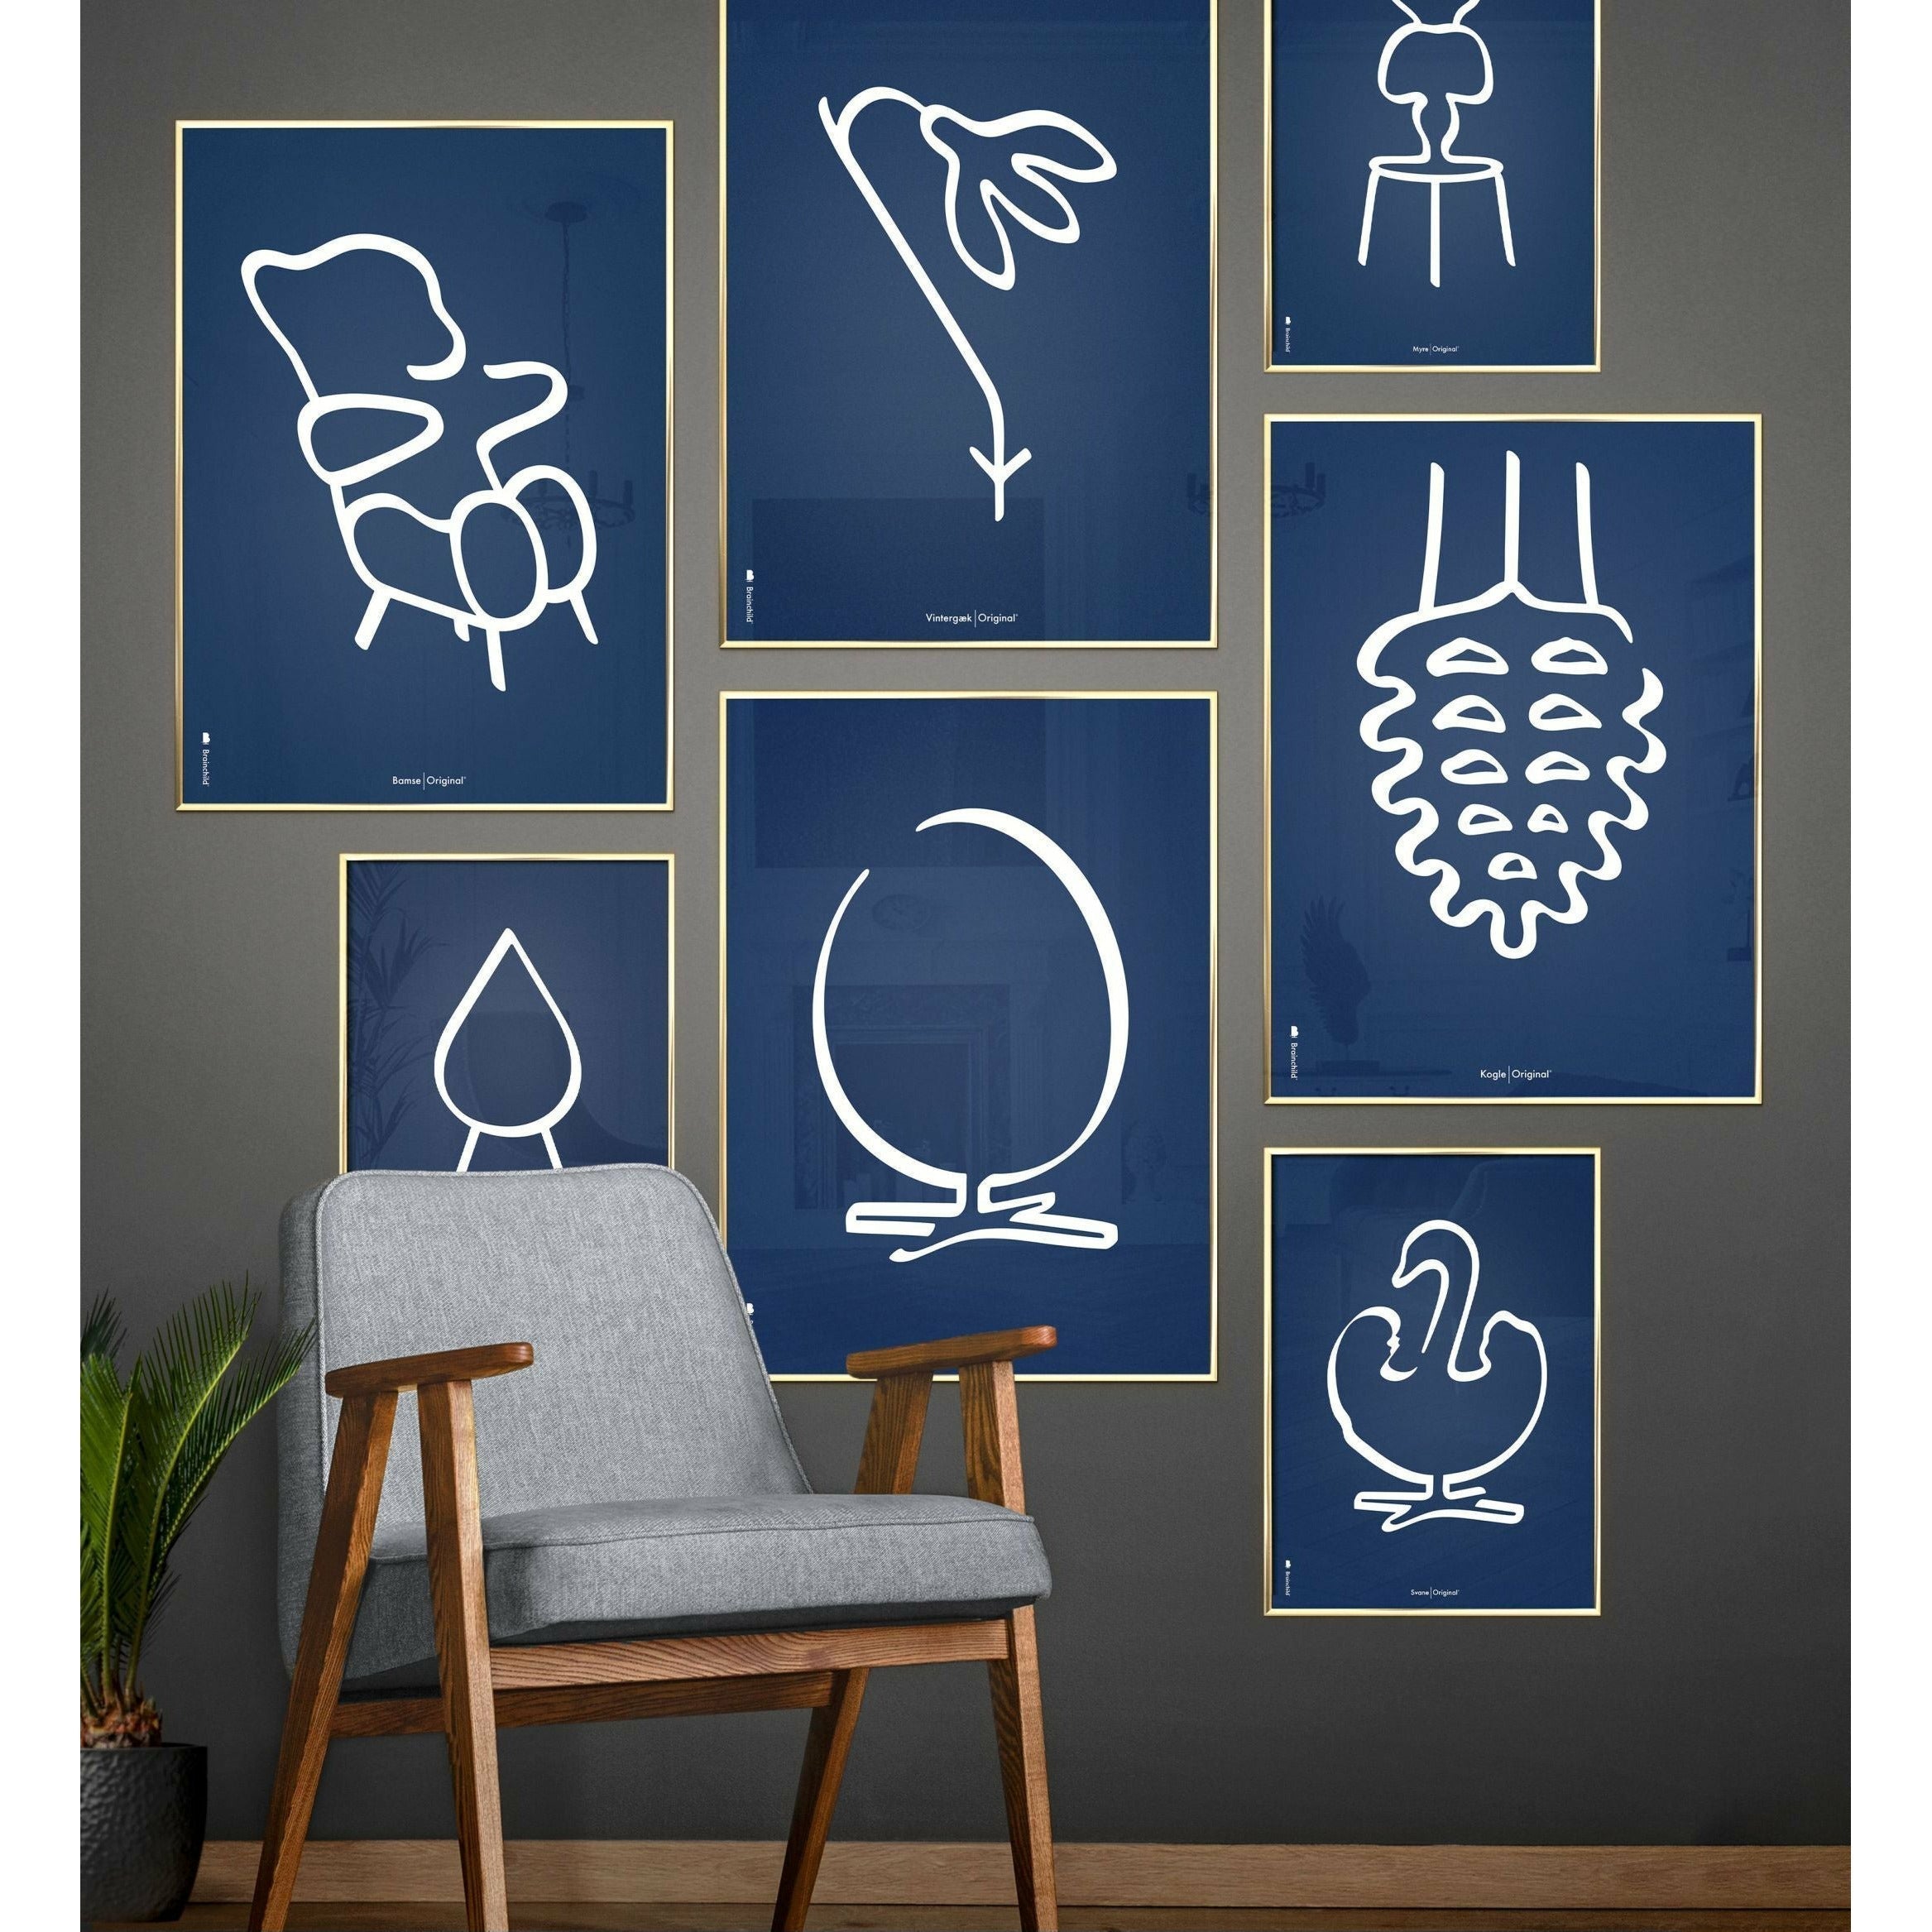 Pomysły plakat linii stożkowej, rama w czarnym lakierowanym drewnie 50x70 cm, niebieskie tło